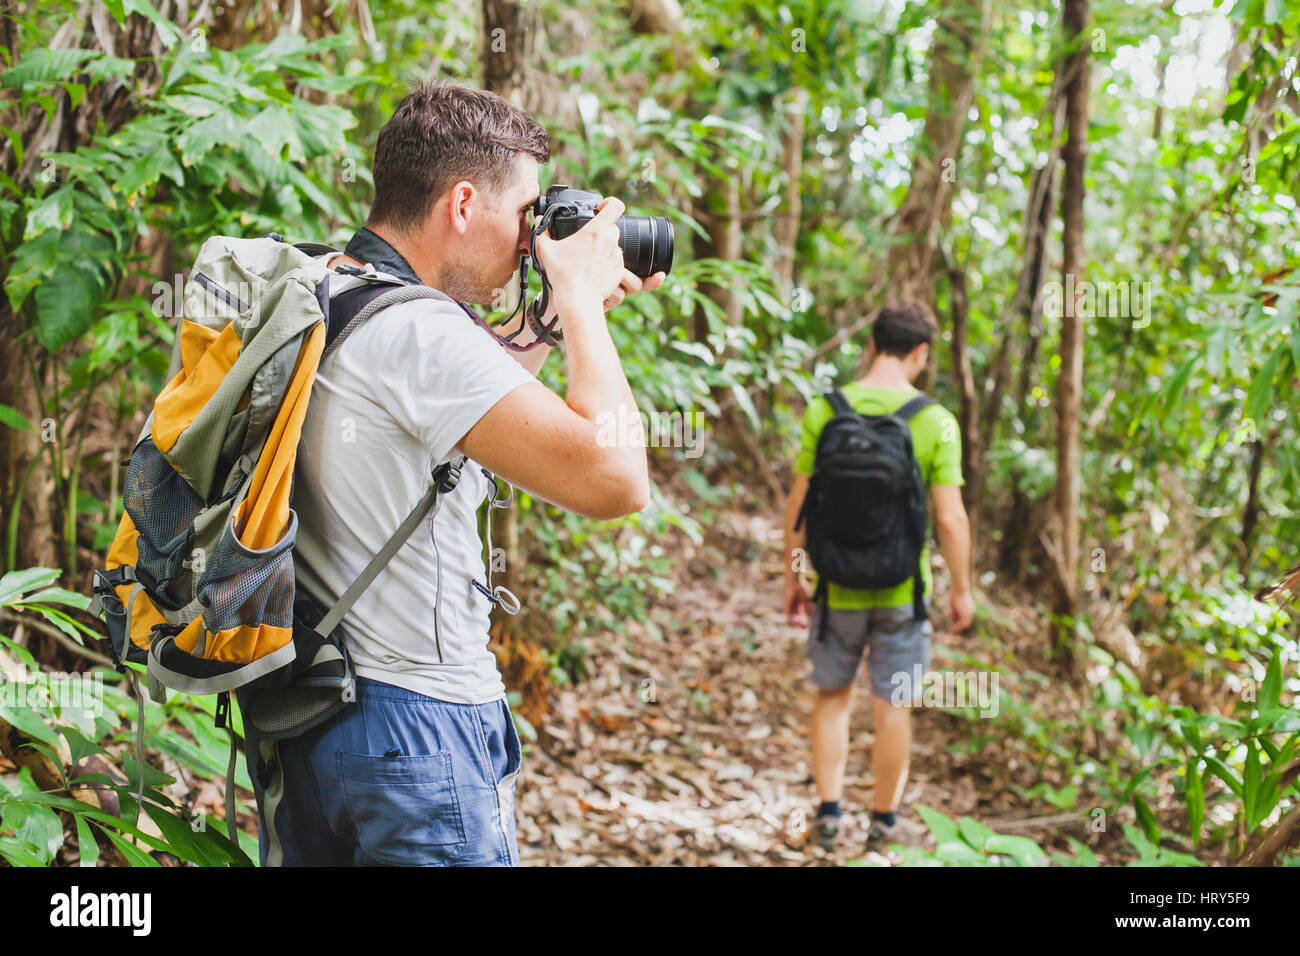 Fotografo di natura nella giungla tropicale, gruppo di turisti escursioni nella foresta, uomo prendendo foto con grande fotocamera Foto Stock